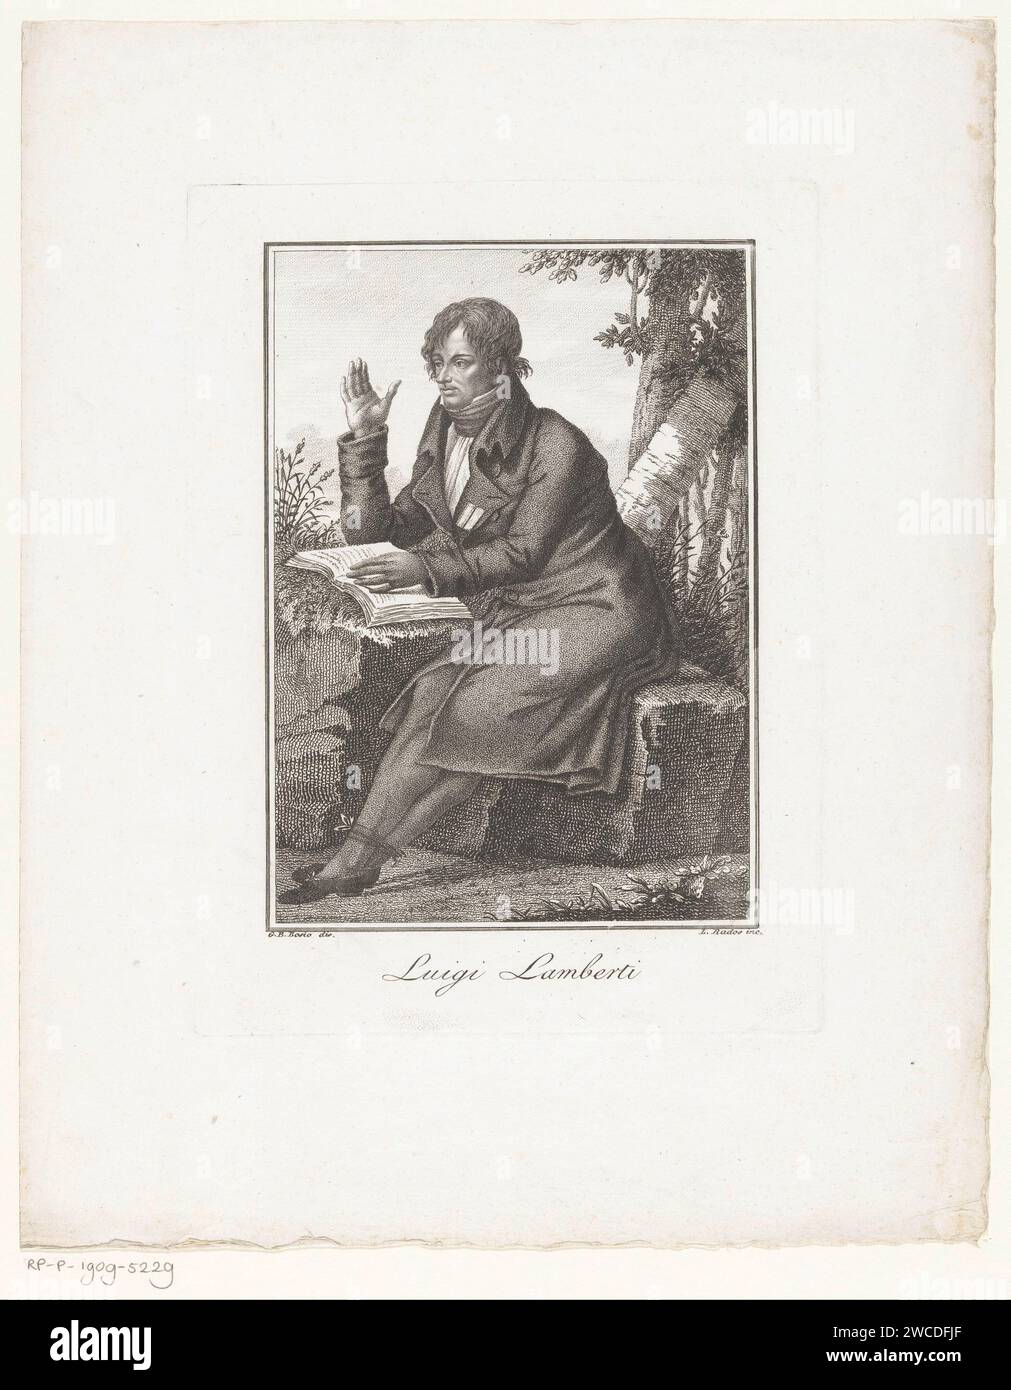 Portret Van Compisto Luigi Lamberti, Luigi Rados, nach Giovanni Battista Bosio, 1783 - 1840 Druck Italien Papier graviert historische Personen. Porträt des Komponisten Stockfoto